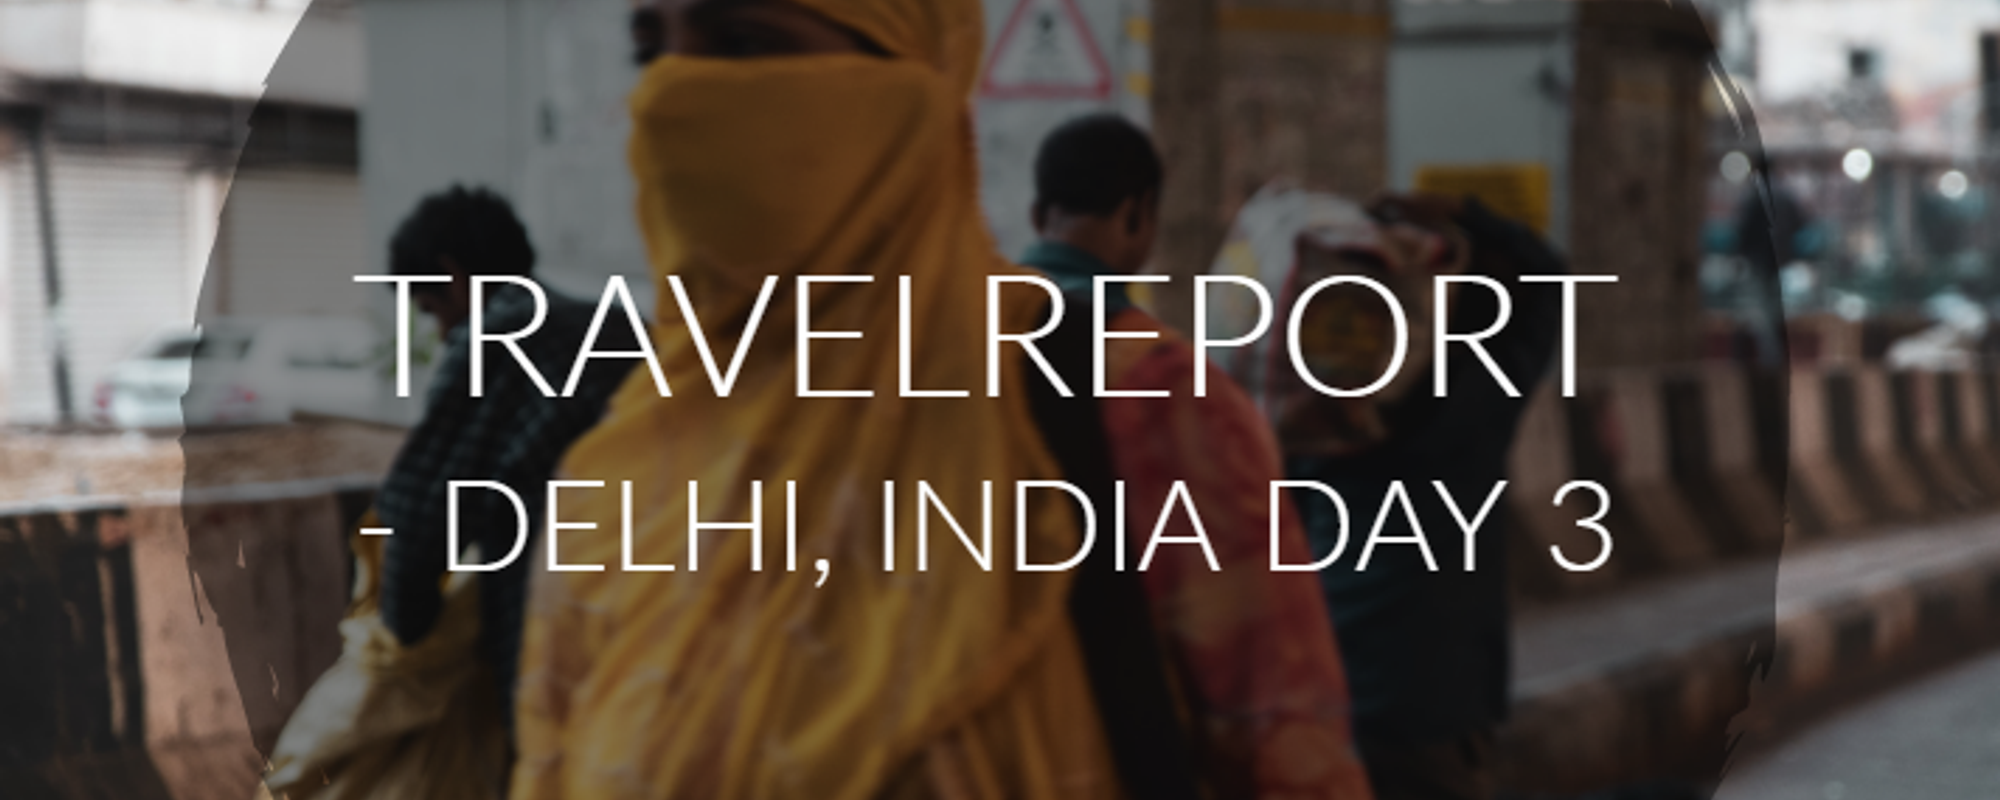 Travelreport - Delhi, India Day 3